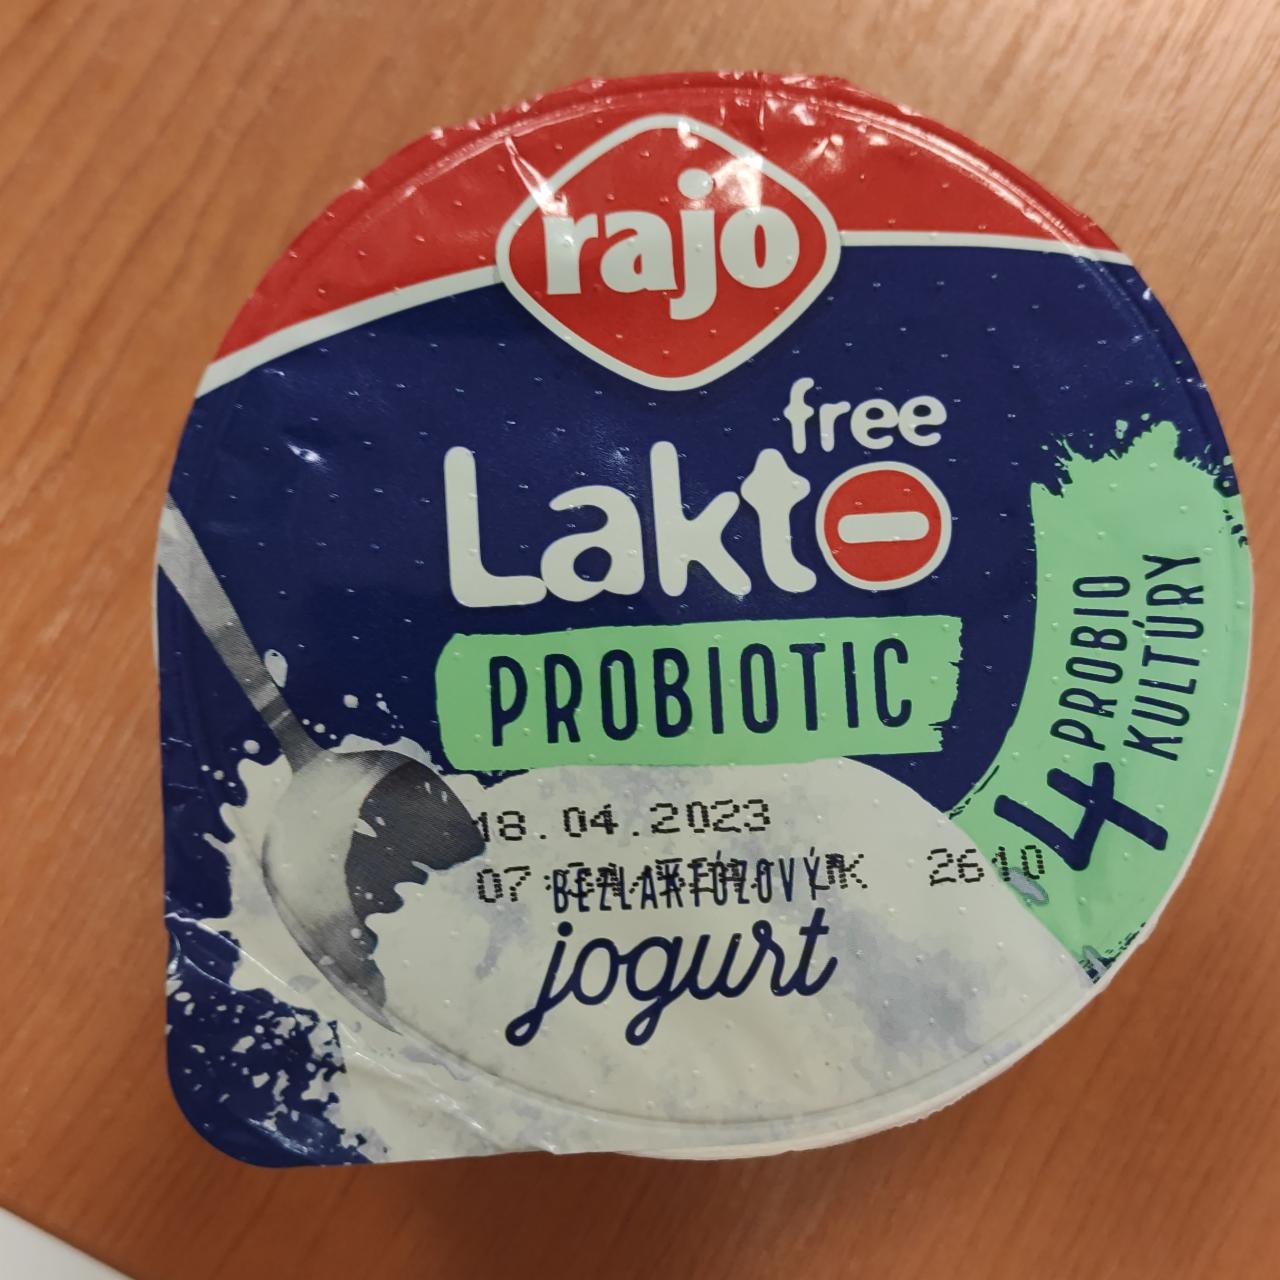 Képek - Laktofree probiotic jogurt Rajo